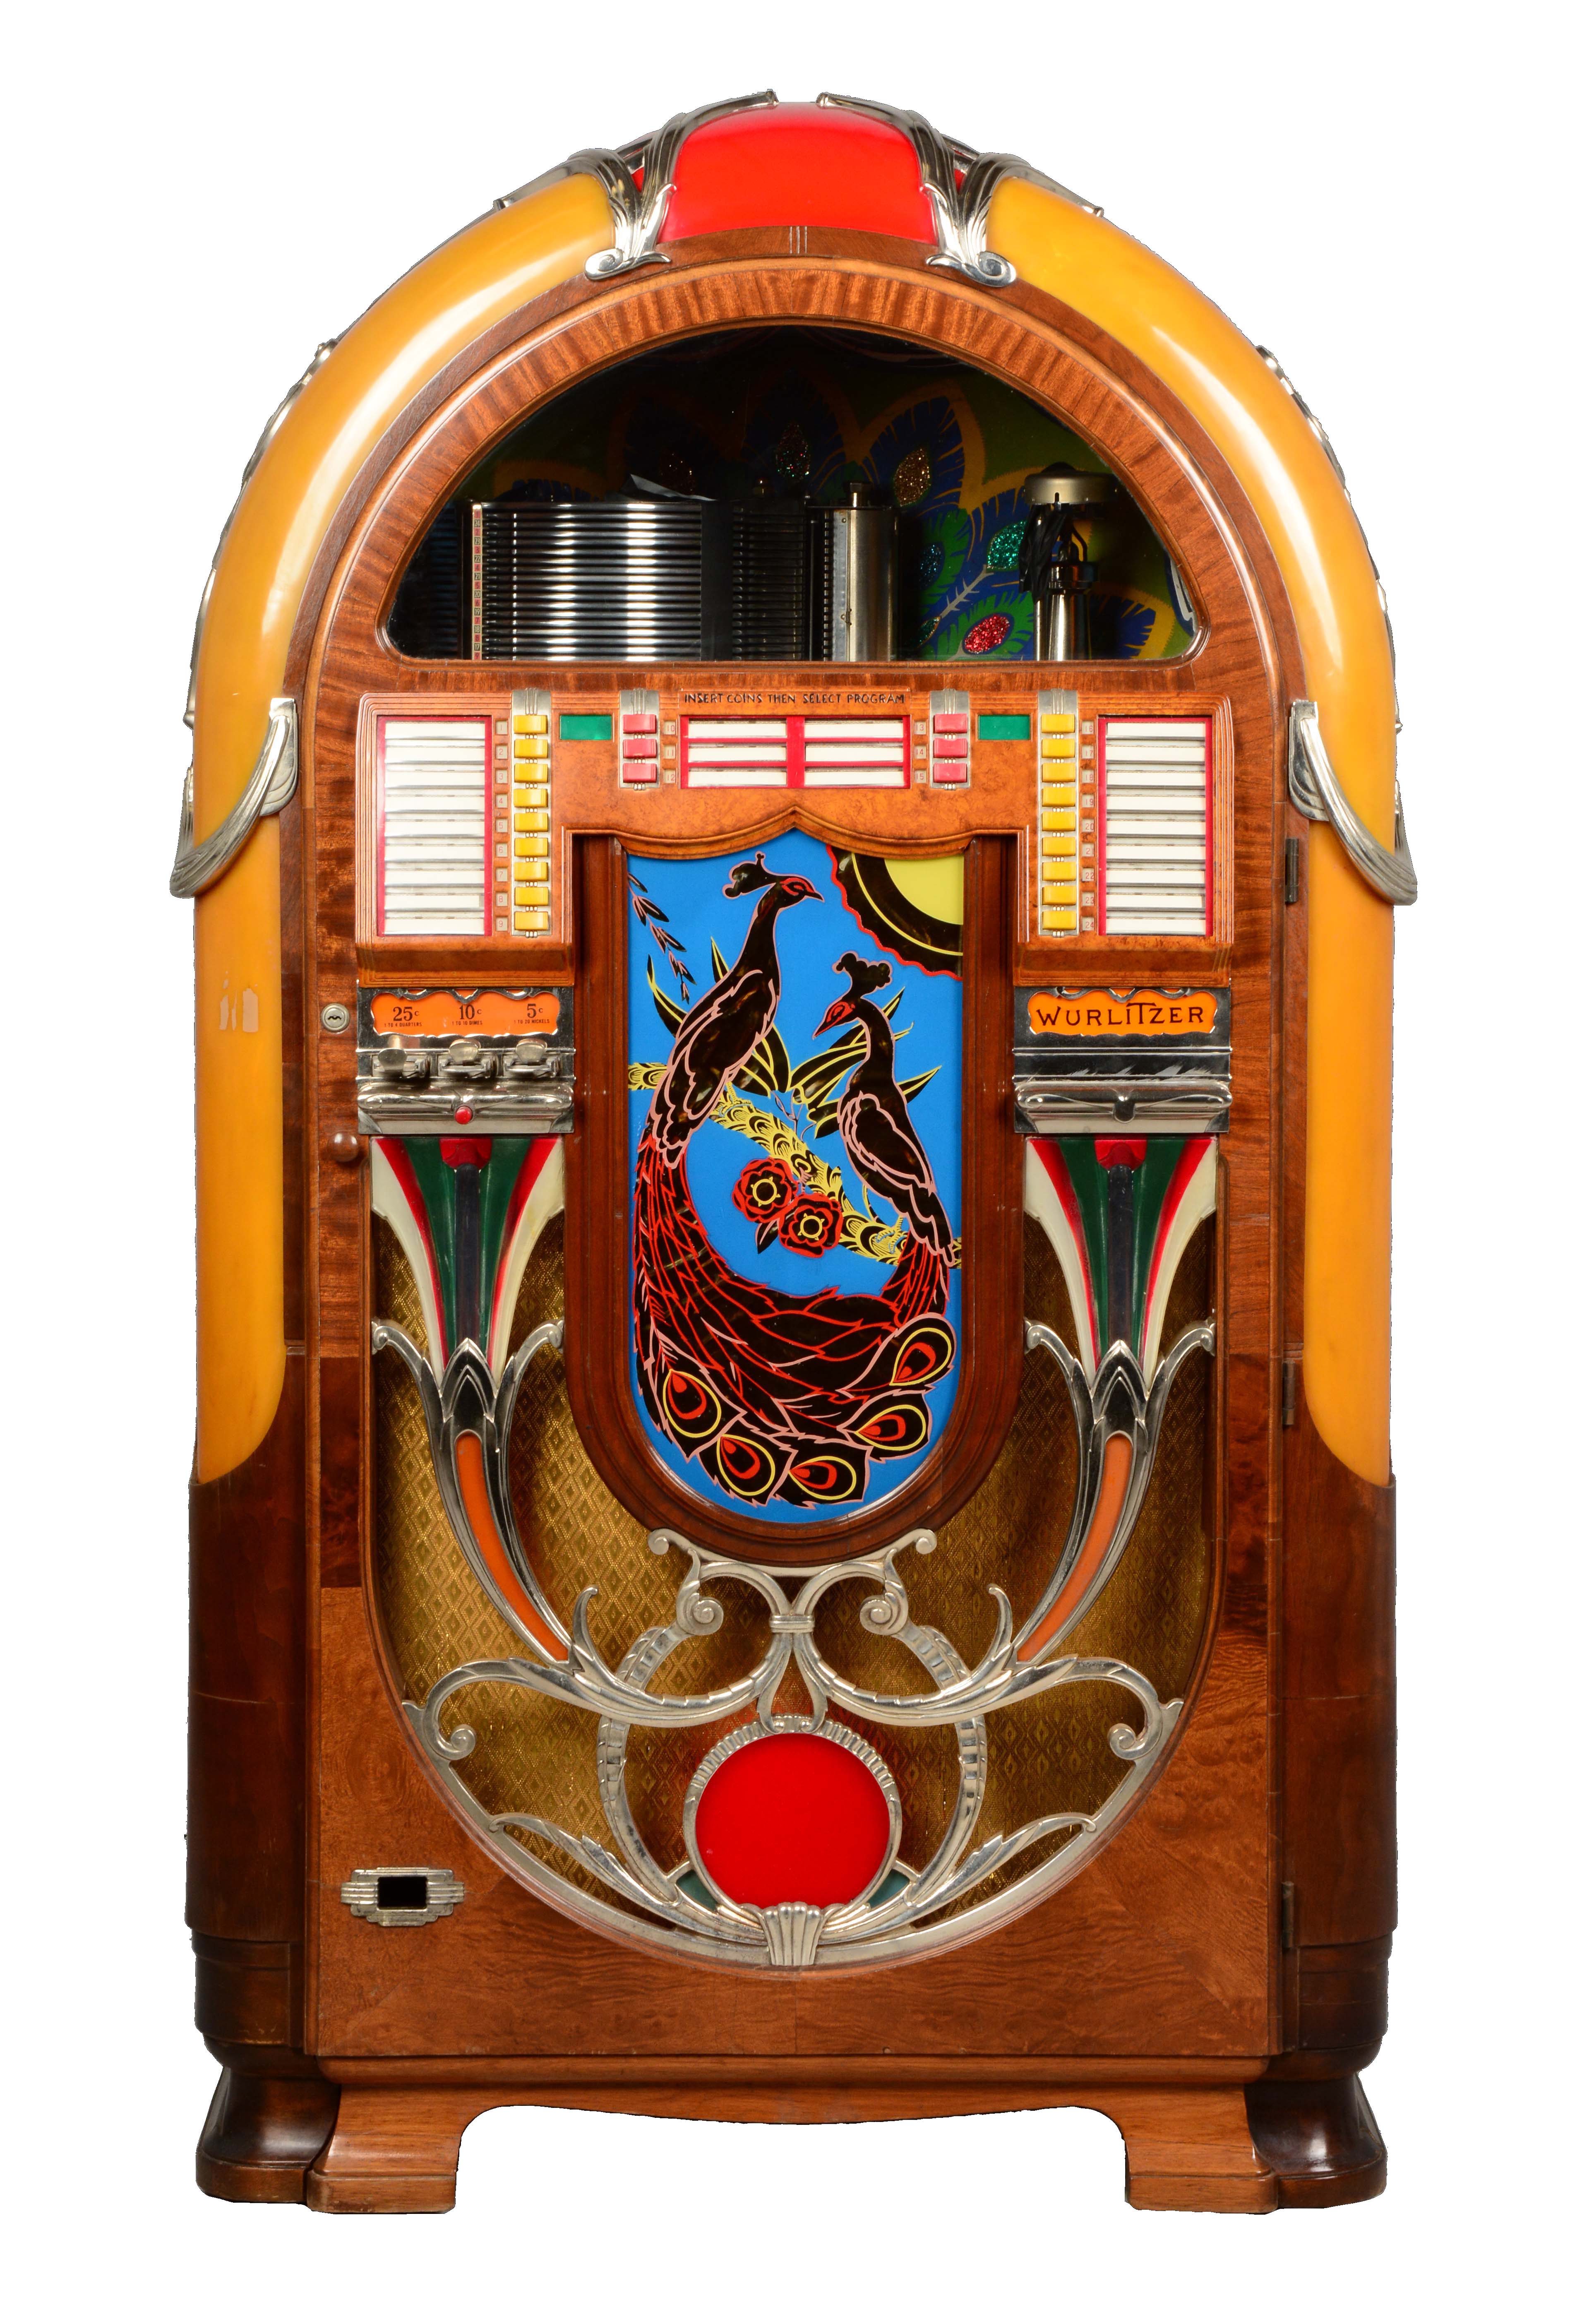 Wurlitzer Peacock Model 850 Phonograph Jukebox, estimated at $15,000-18,000.